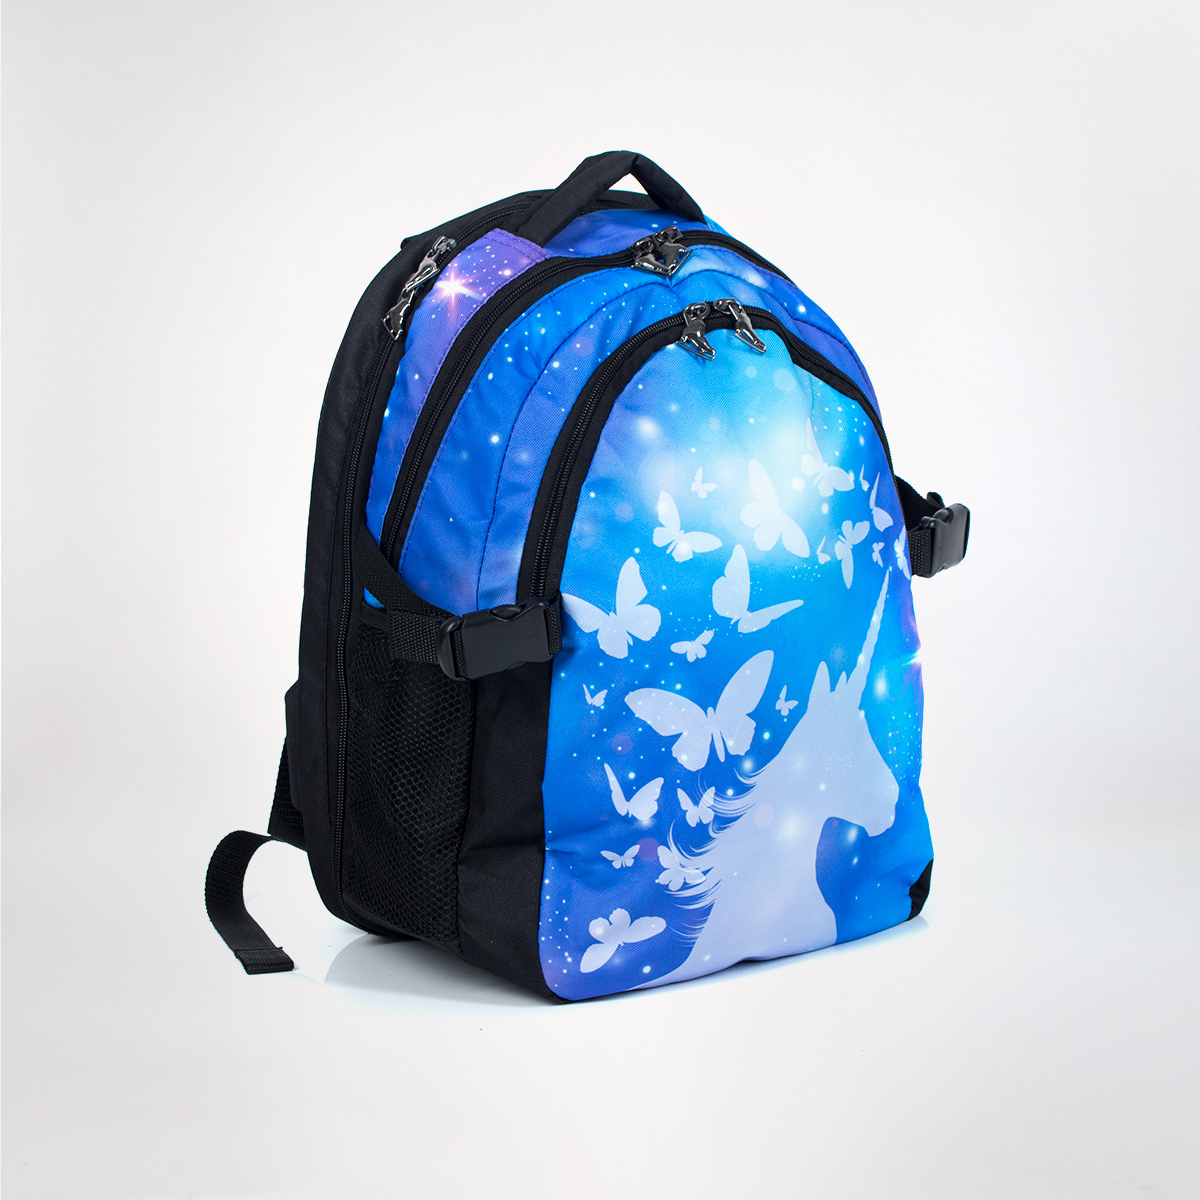 Рюкзак "Runa" - Unicorn-blue